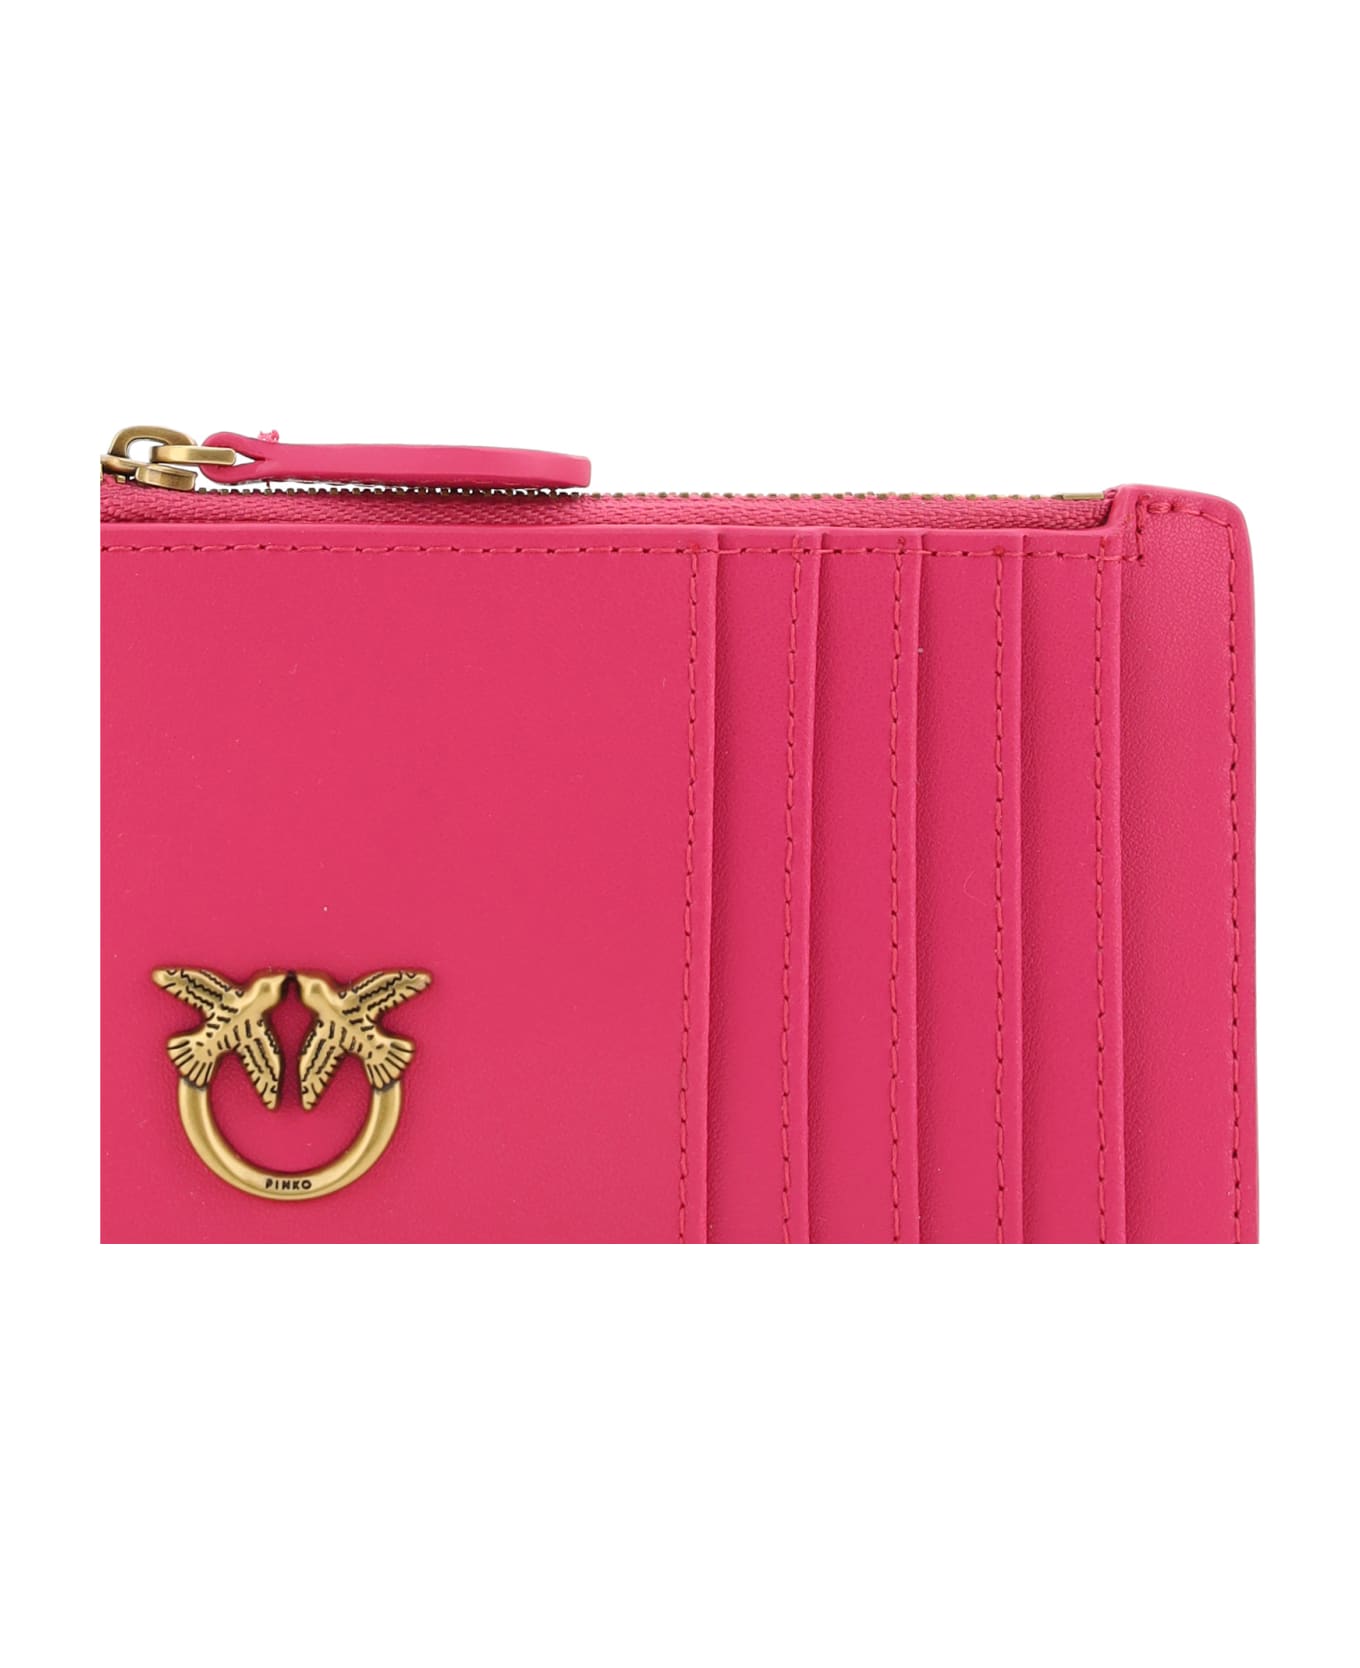 Pinko Card Case - Pink Pinko